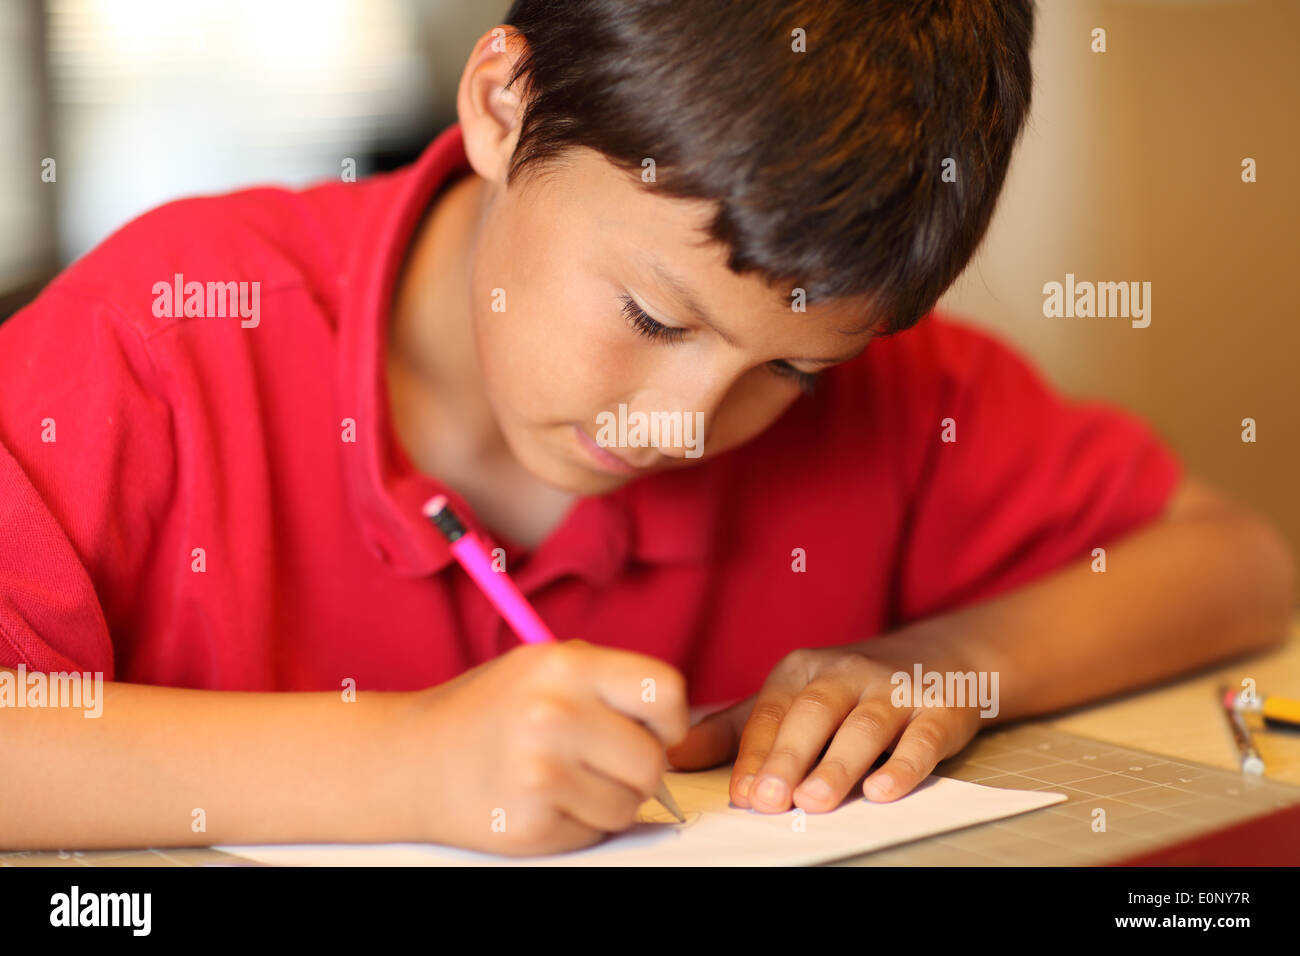 Jeune garçon dessin pour ses devoirs - faible profondeur de champ Banque D'Images